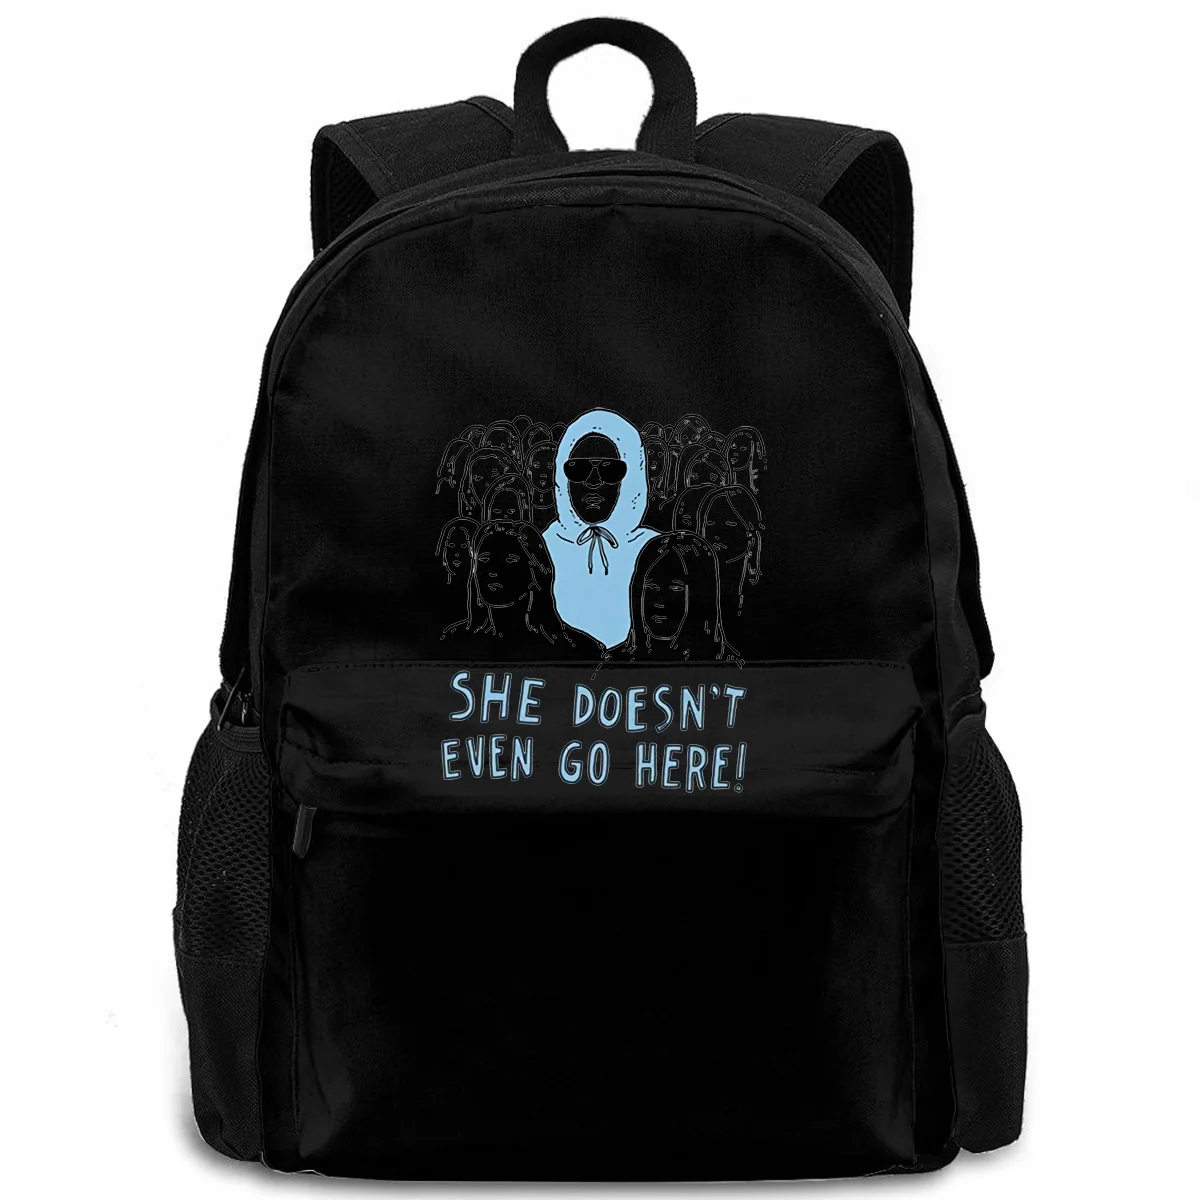 

Соединение пульсации означает, что девушки она даже не идет сюда взрослый Женский Мужской рюкзак для ноутбука для путешествий школы взросл...